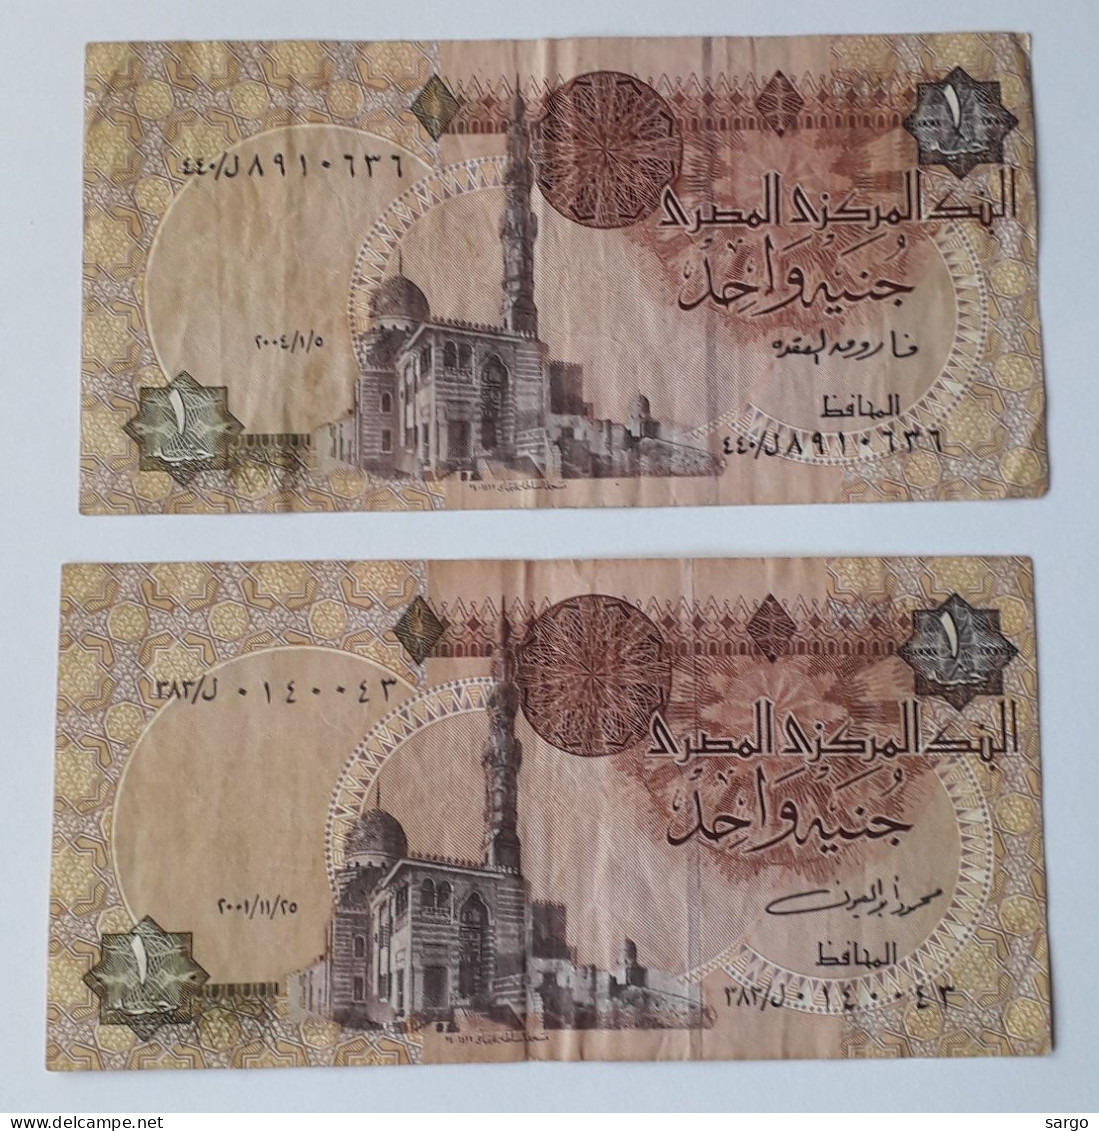 EGYPT - 1 + 1 POUND -  P 50 - 1978-2008 -  CIRC - 2 PCS - BANKNOTES - PAPER MONEY - CARTAMONETA - - Egitto